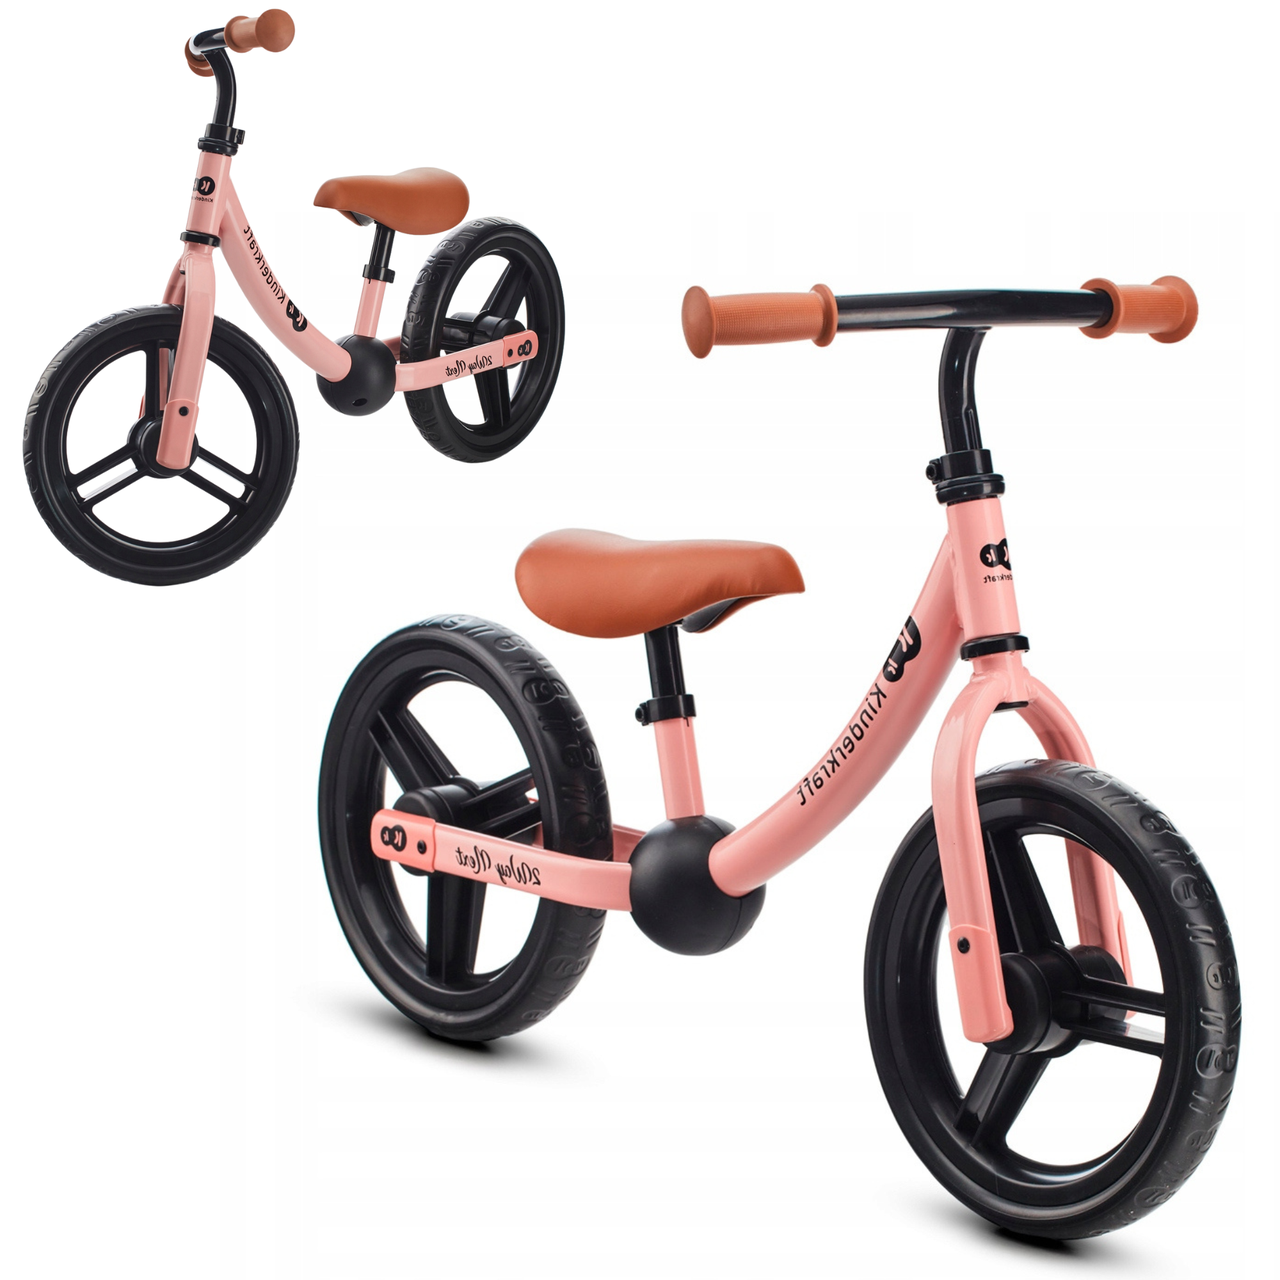 Біговел велобіг дитячий легкий без педалей від 2 років Kinderkraft 2WAY NEXT 2022 Rose Pink, Біговий велосипед